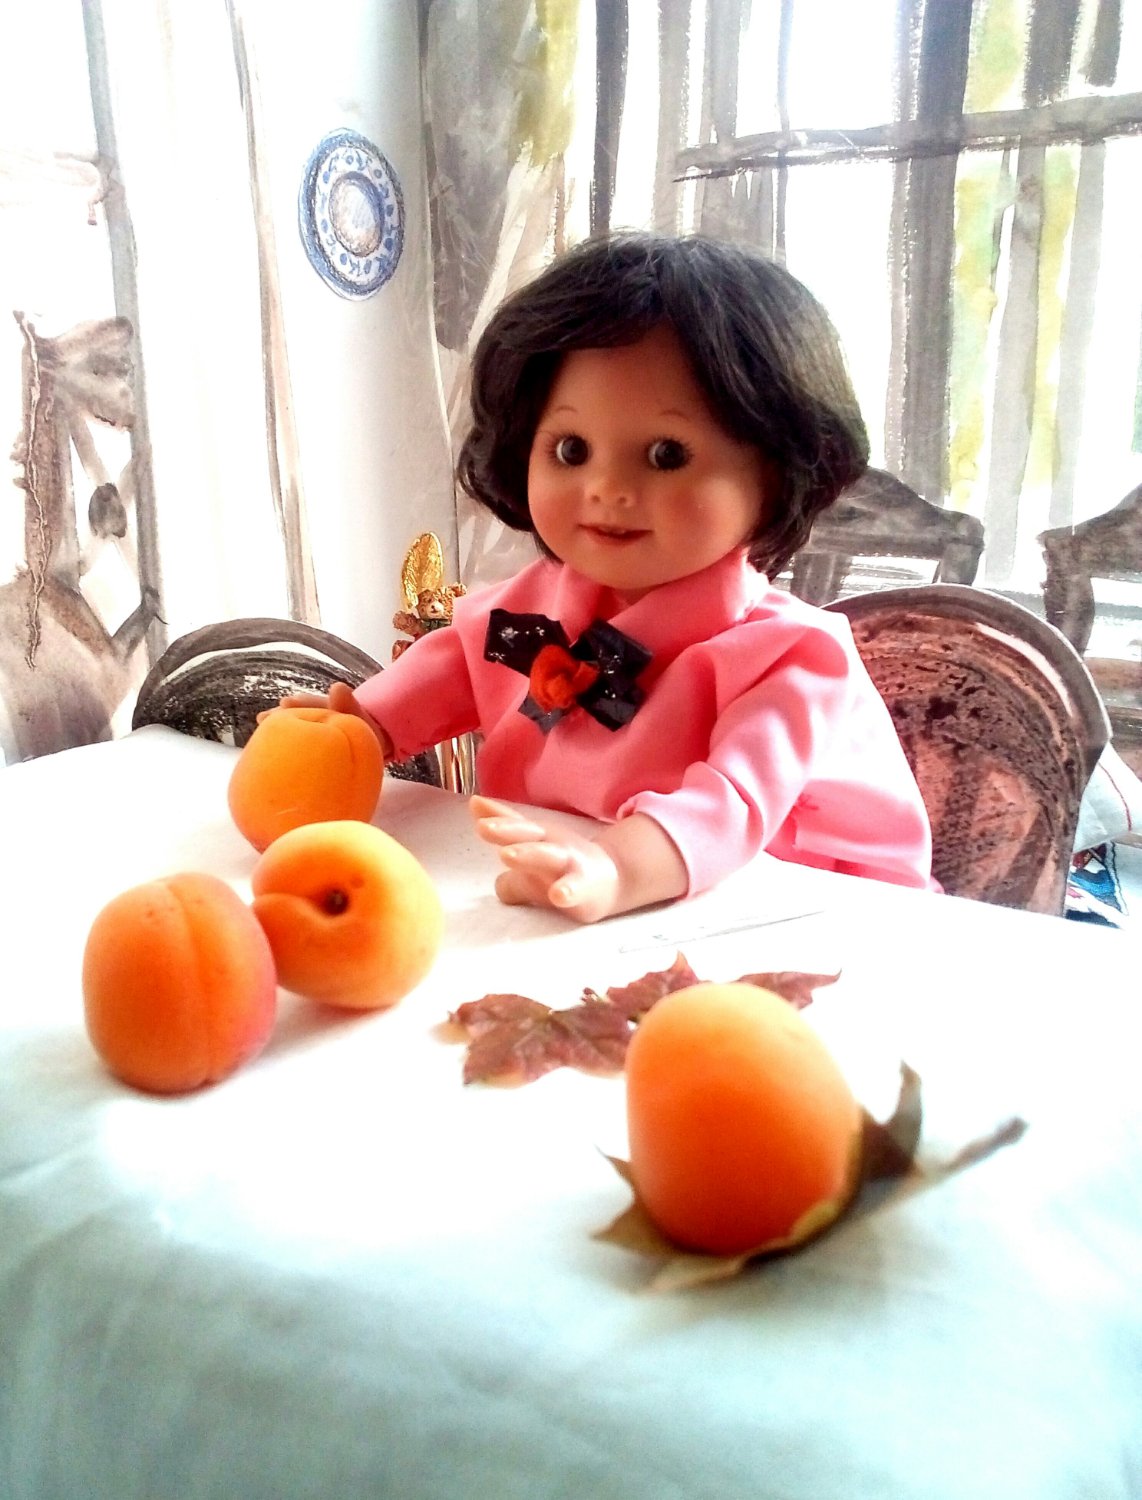 Девочка с персиками / Общий фотоконкурс - Картина в образе куклы. 10 -  31 мая 2020 / Конкурсы / Бэйбики | 6494